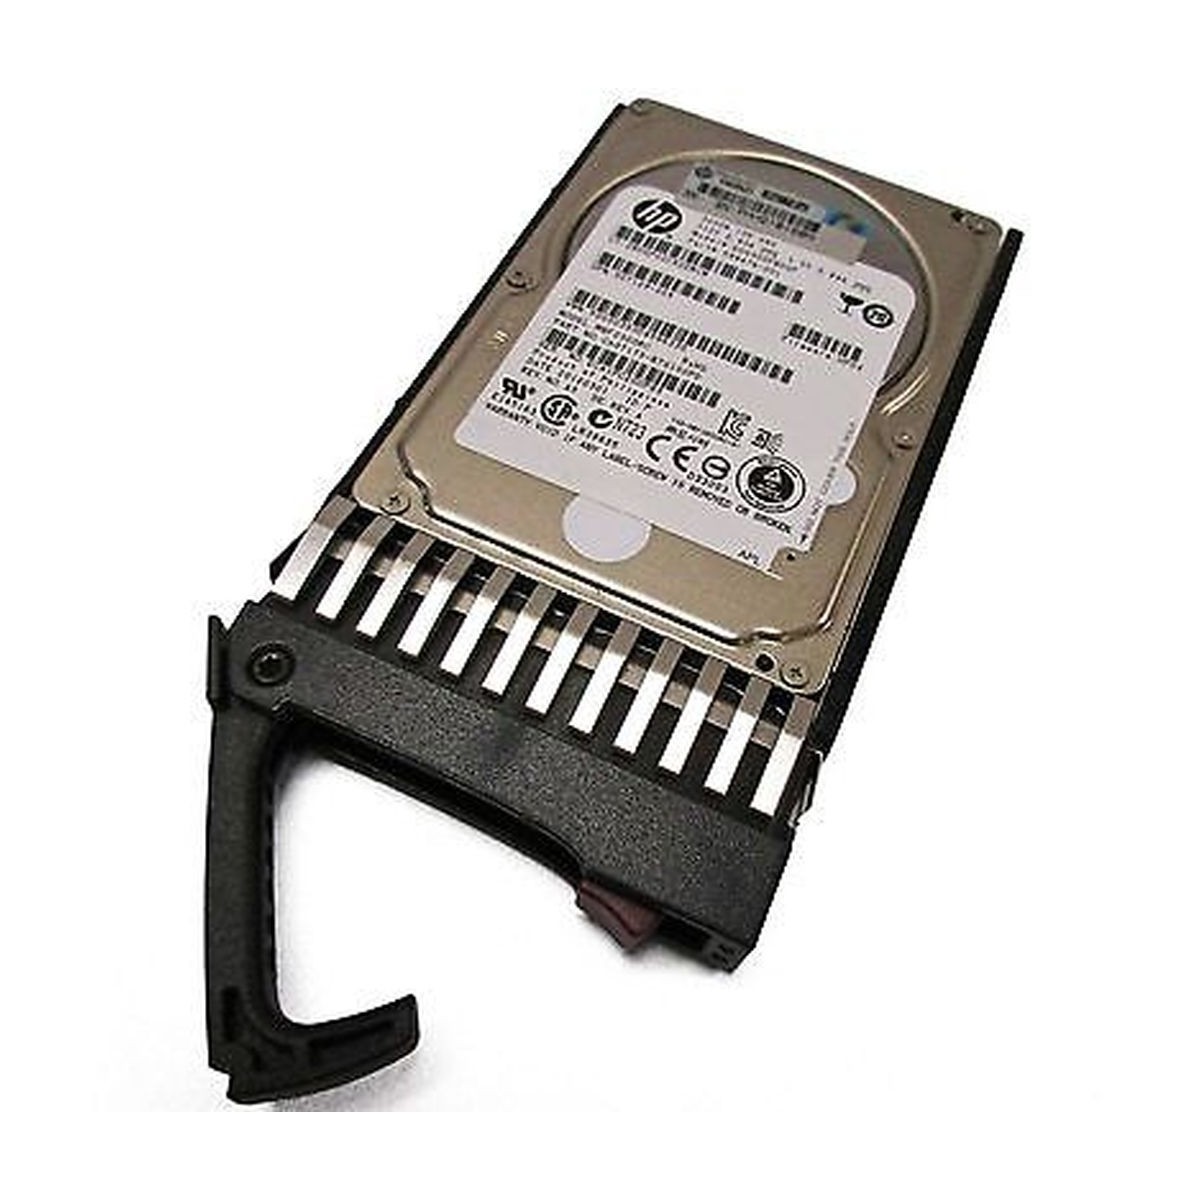 DYSK HP 300GB SAS 10K 6G 2,5 G1-G7 518011-002